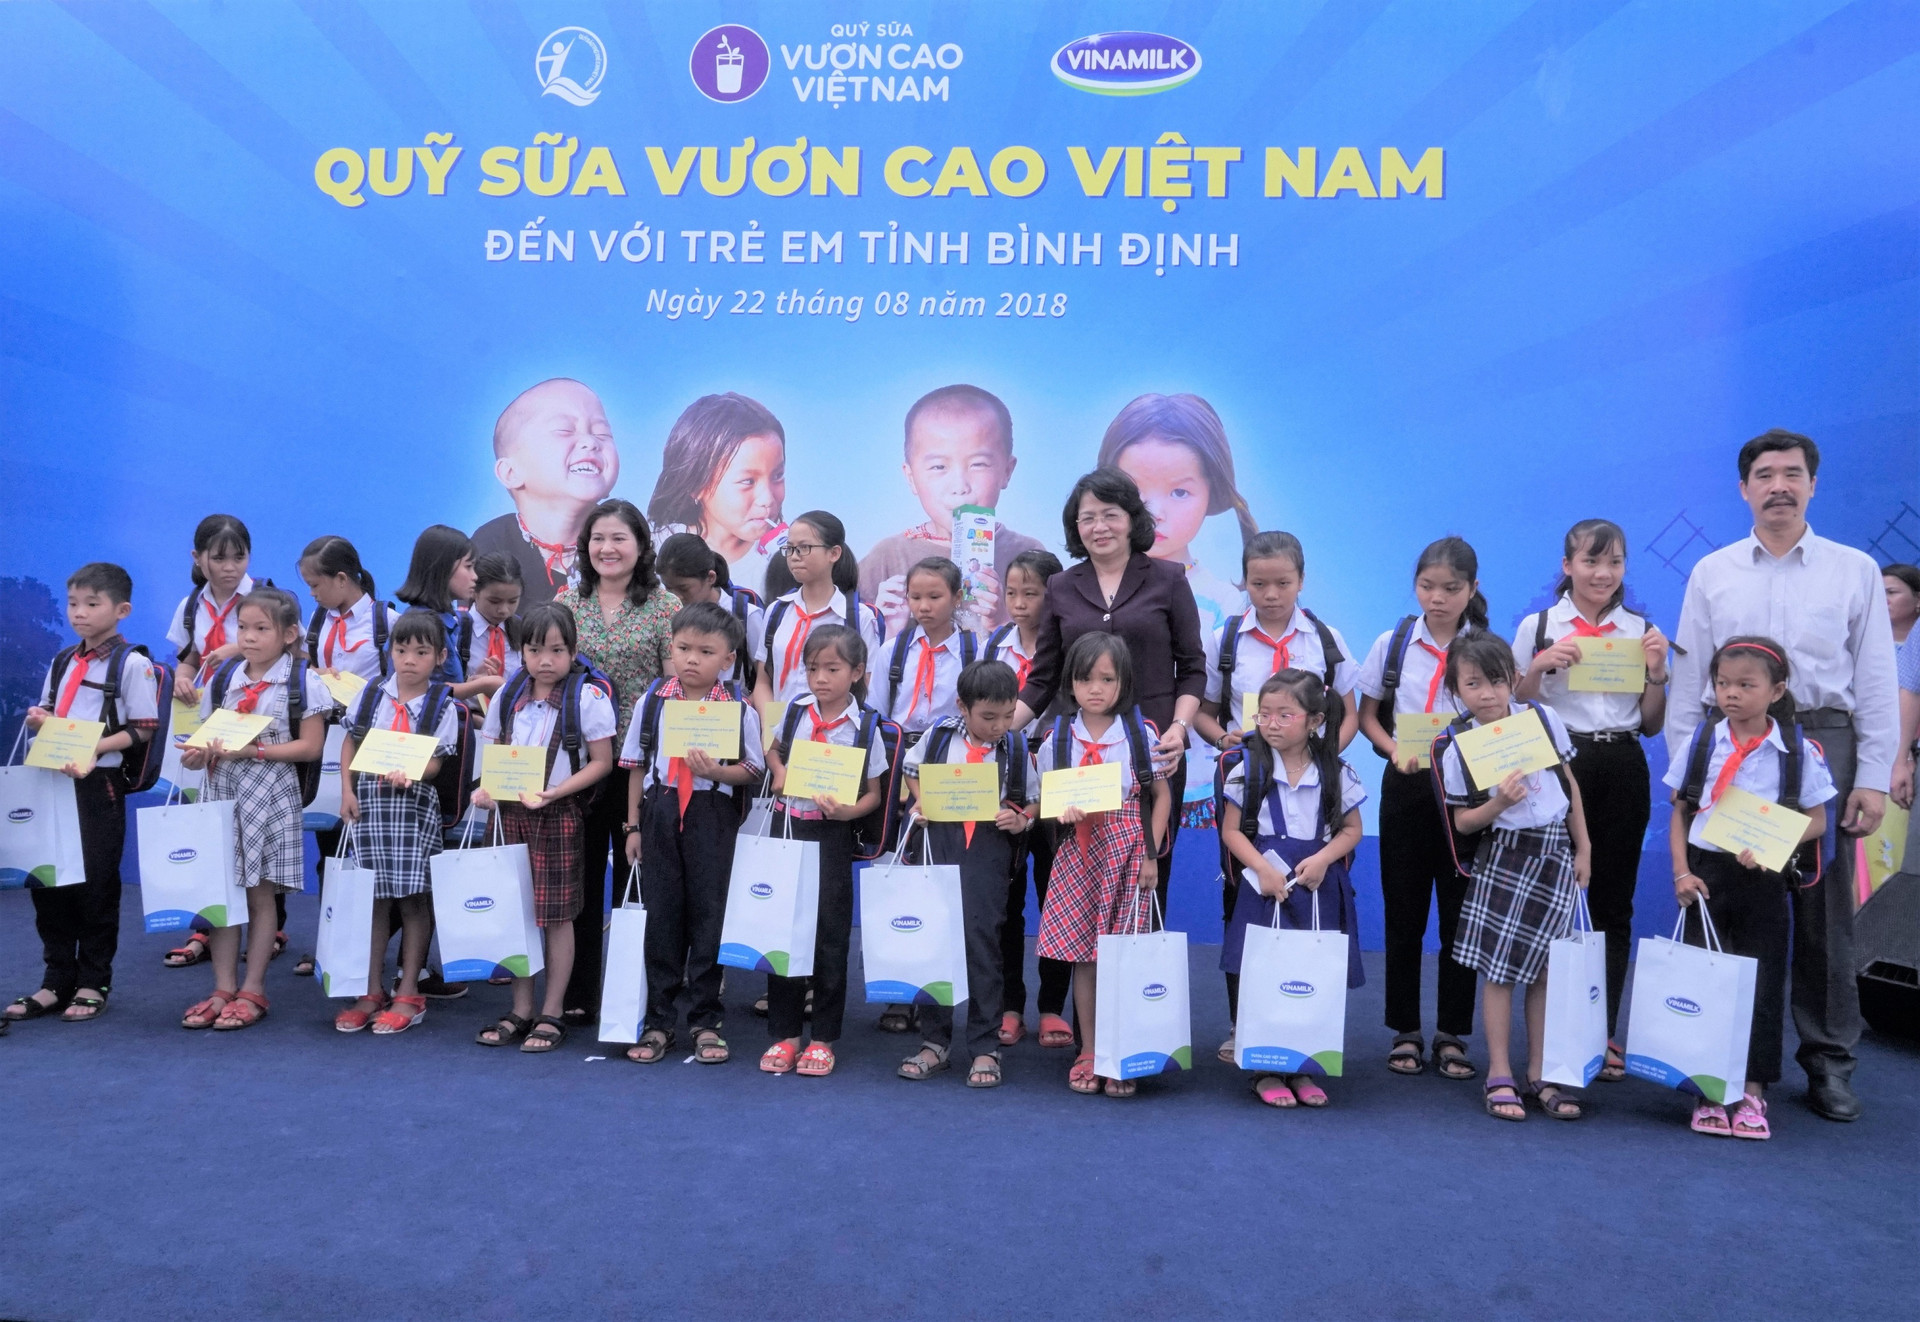 Quỹ sữa vươn cao Việt Nam và Vinamilk tiếp tục trao 64.000 ly sữa cho trẻ em tỉnh Bình Định.